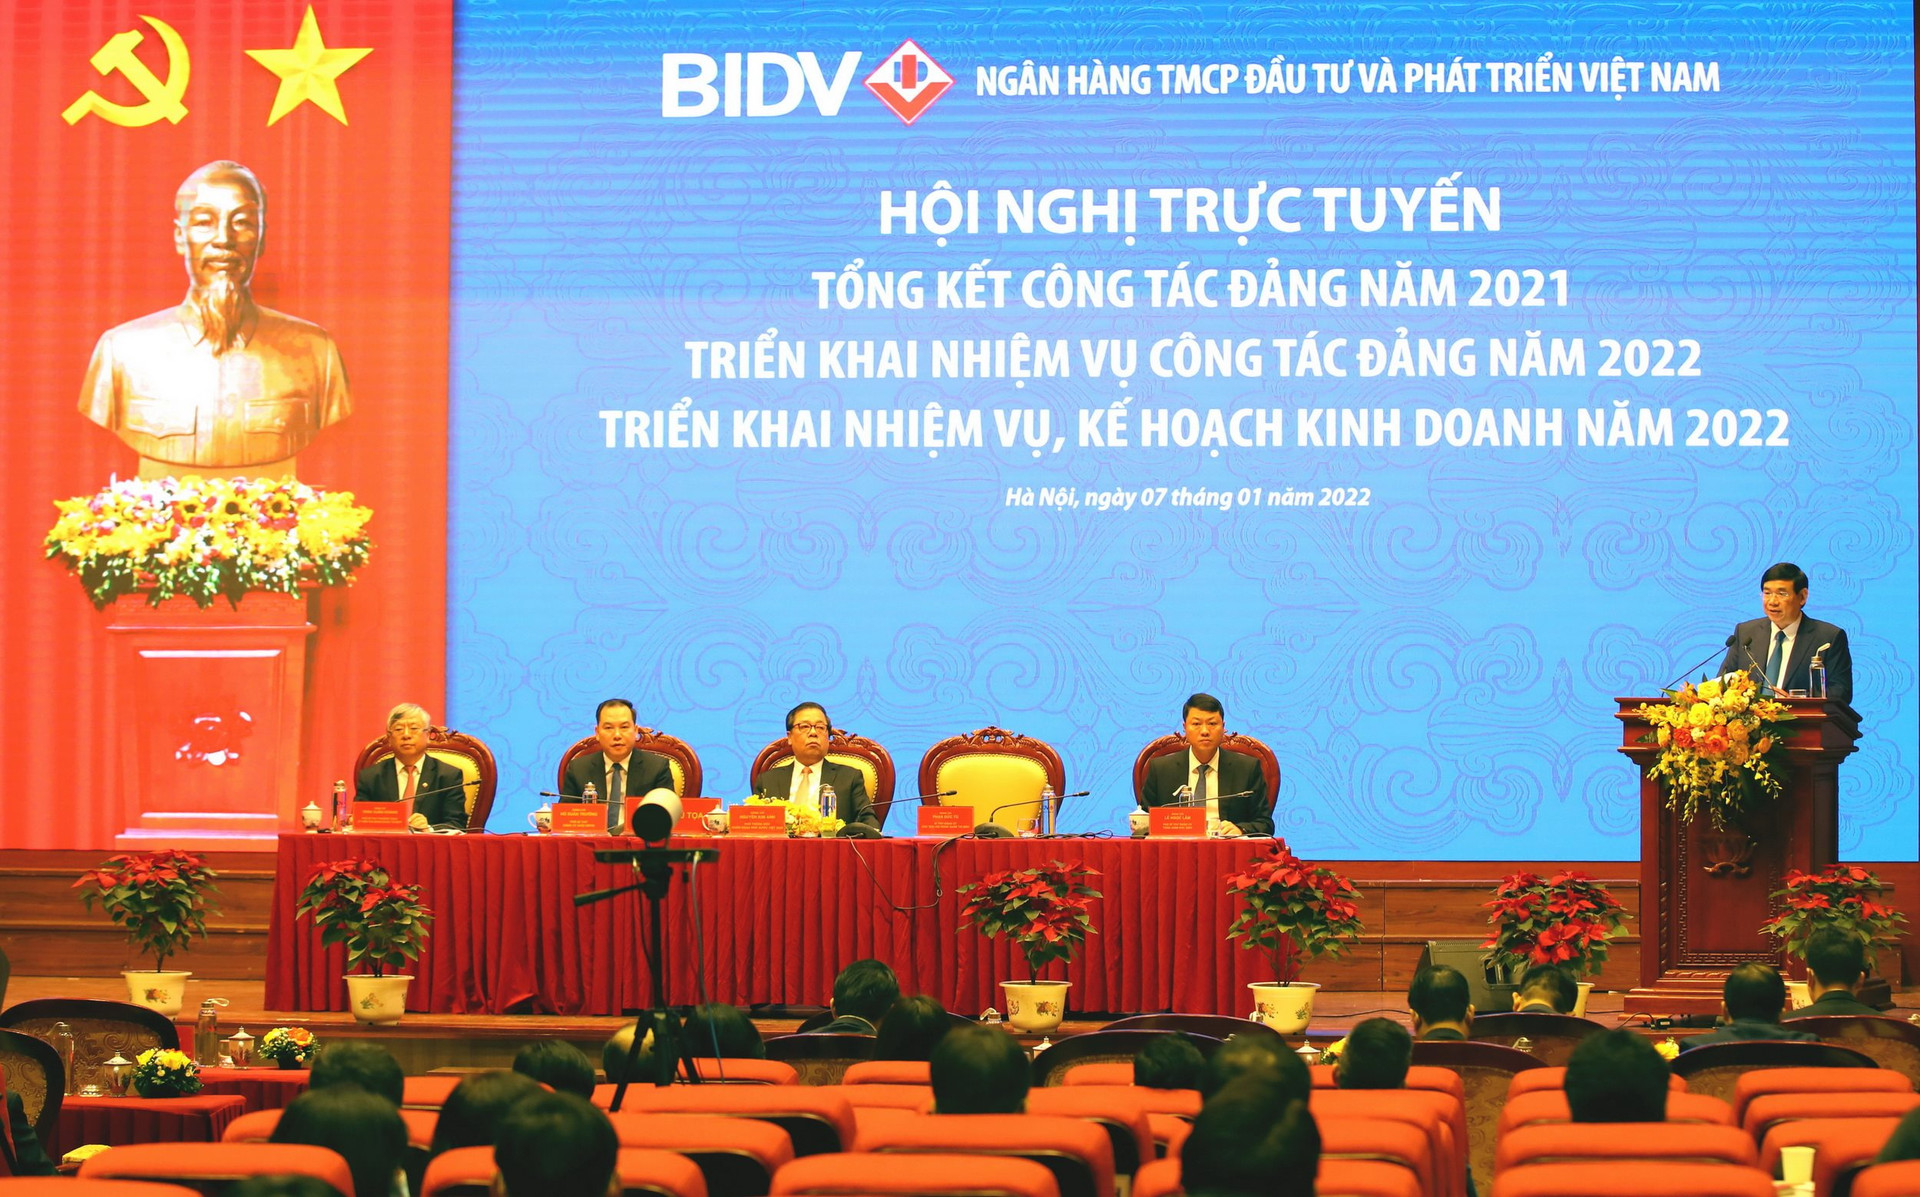 Tỷ lệ bao phủ nợ xấu năm 2021 của BIDV đạt 235%